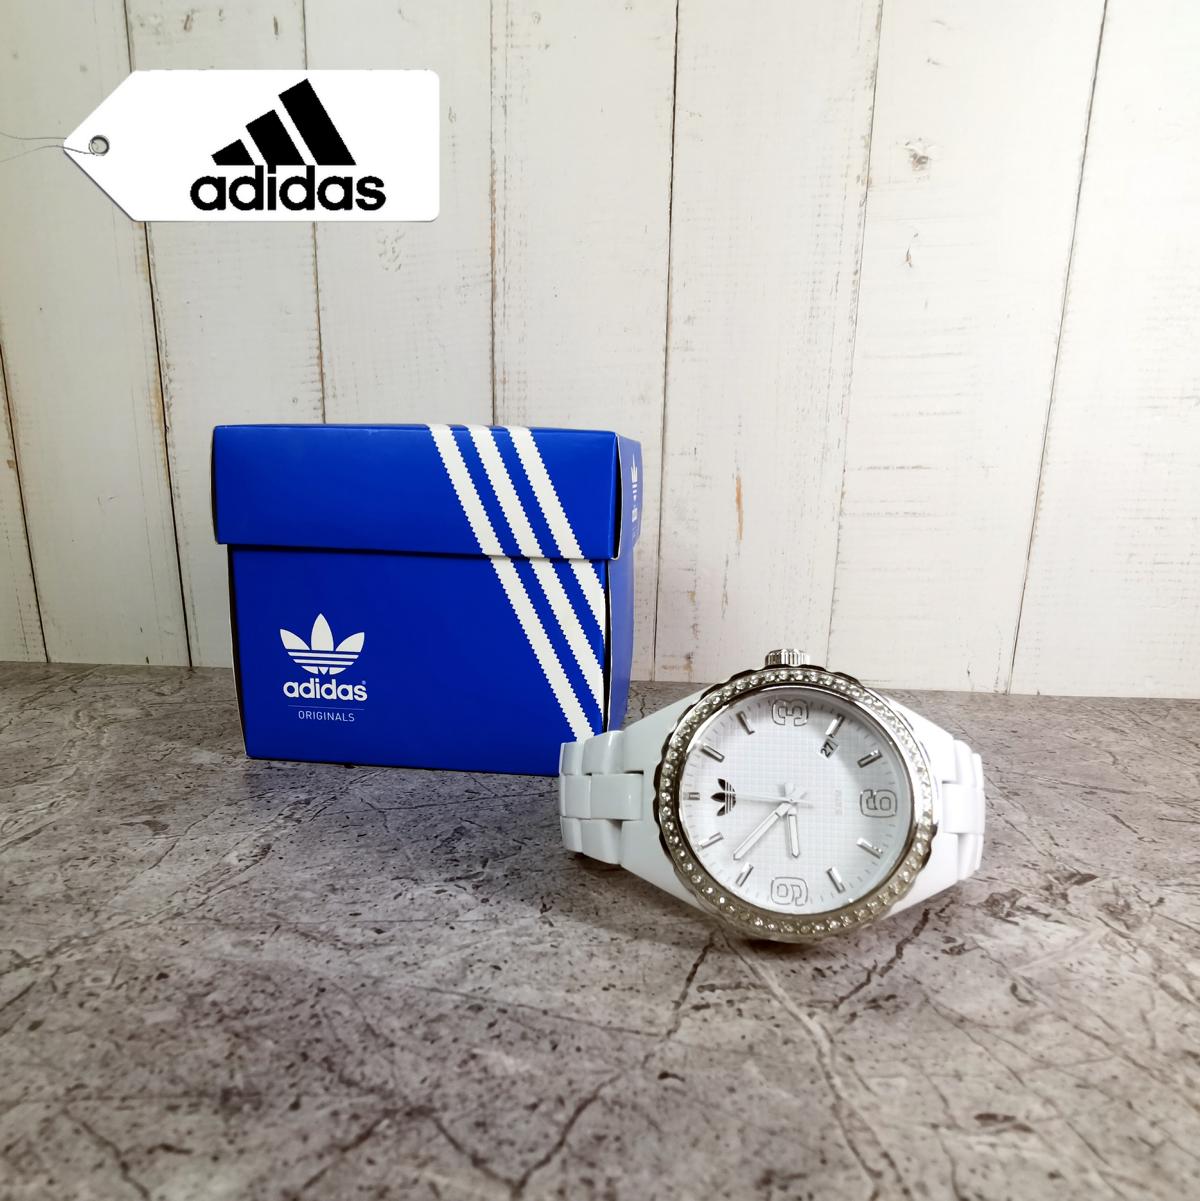 941 - Armbanduhr "Adidas" - KreisLauf-Kaufhaus Höchstadt • Herzogenaurach Eckental • Bamberg • Neustadt